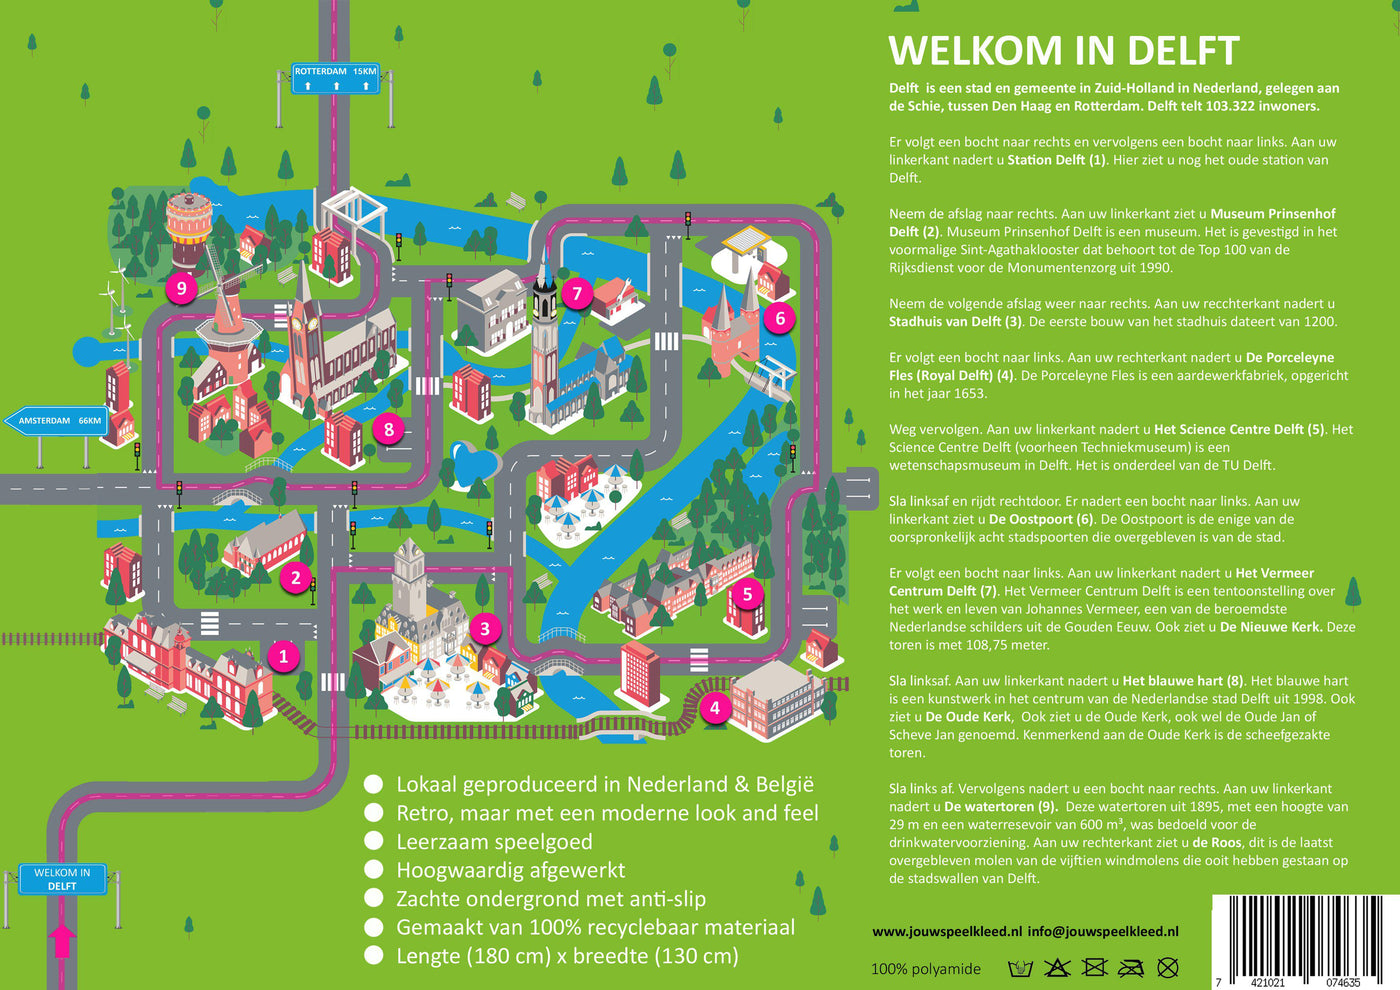 Speelkleed Delft flyer